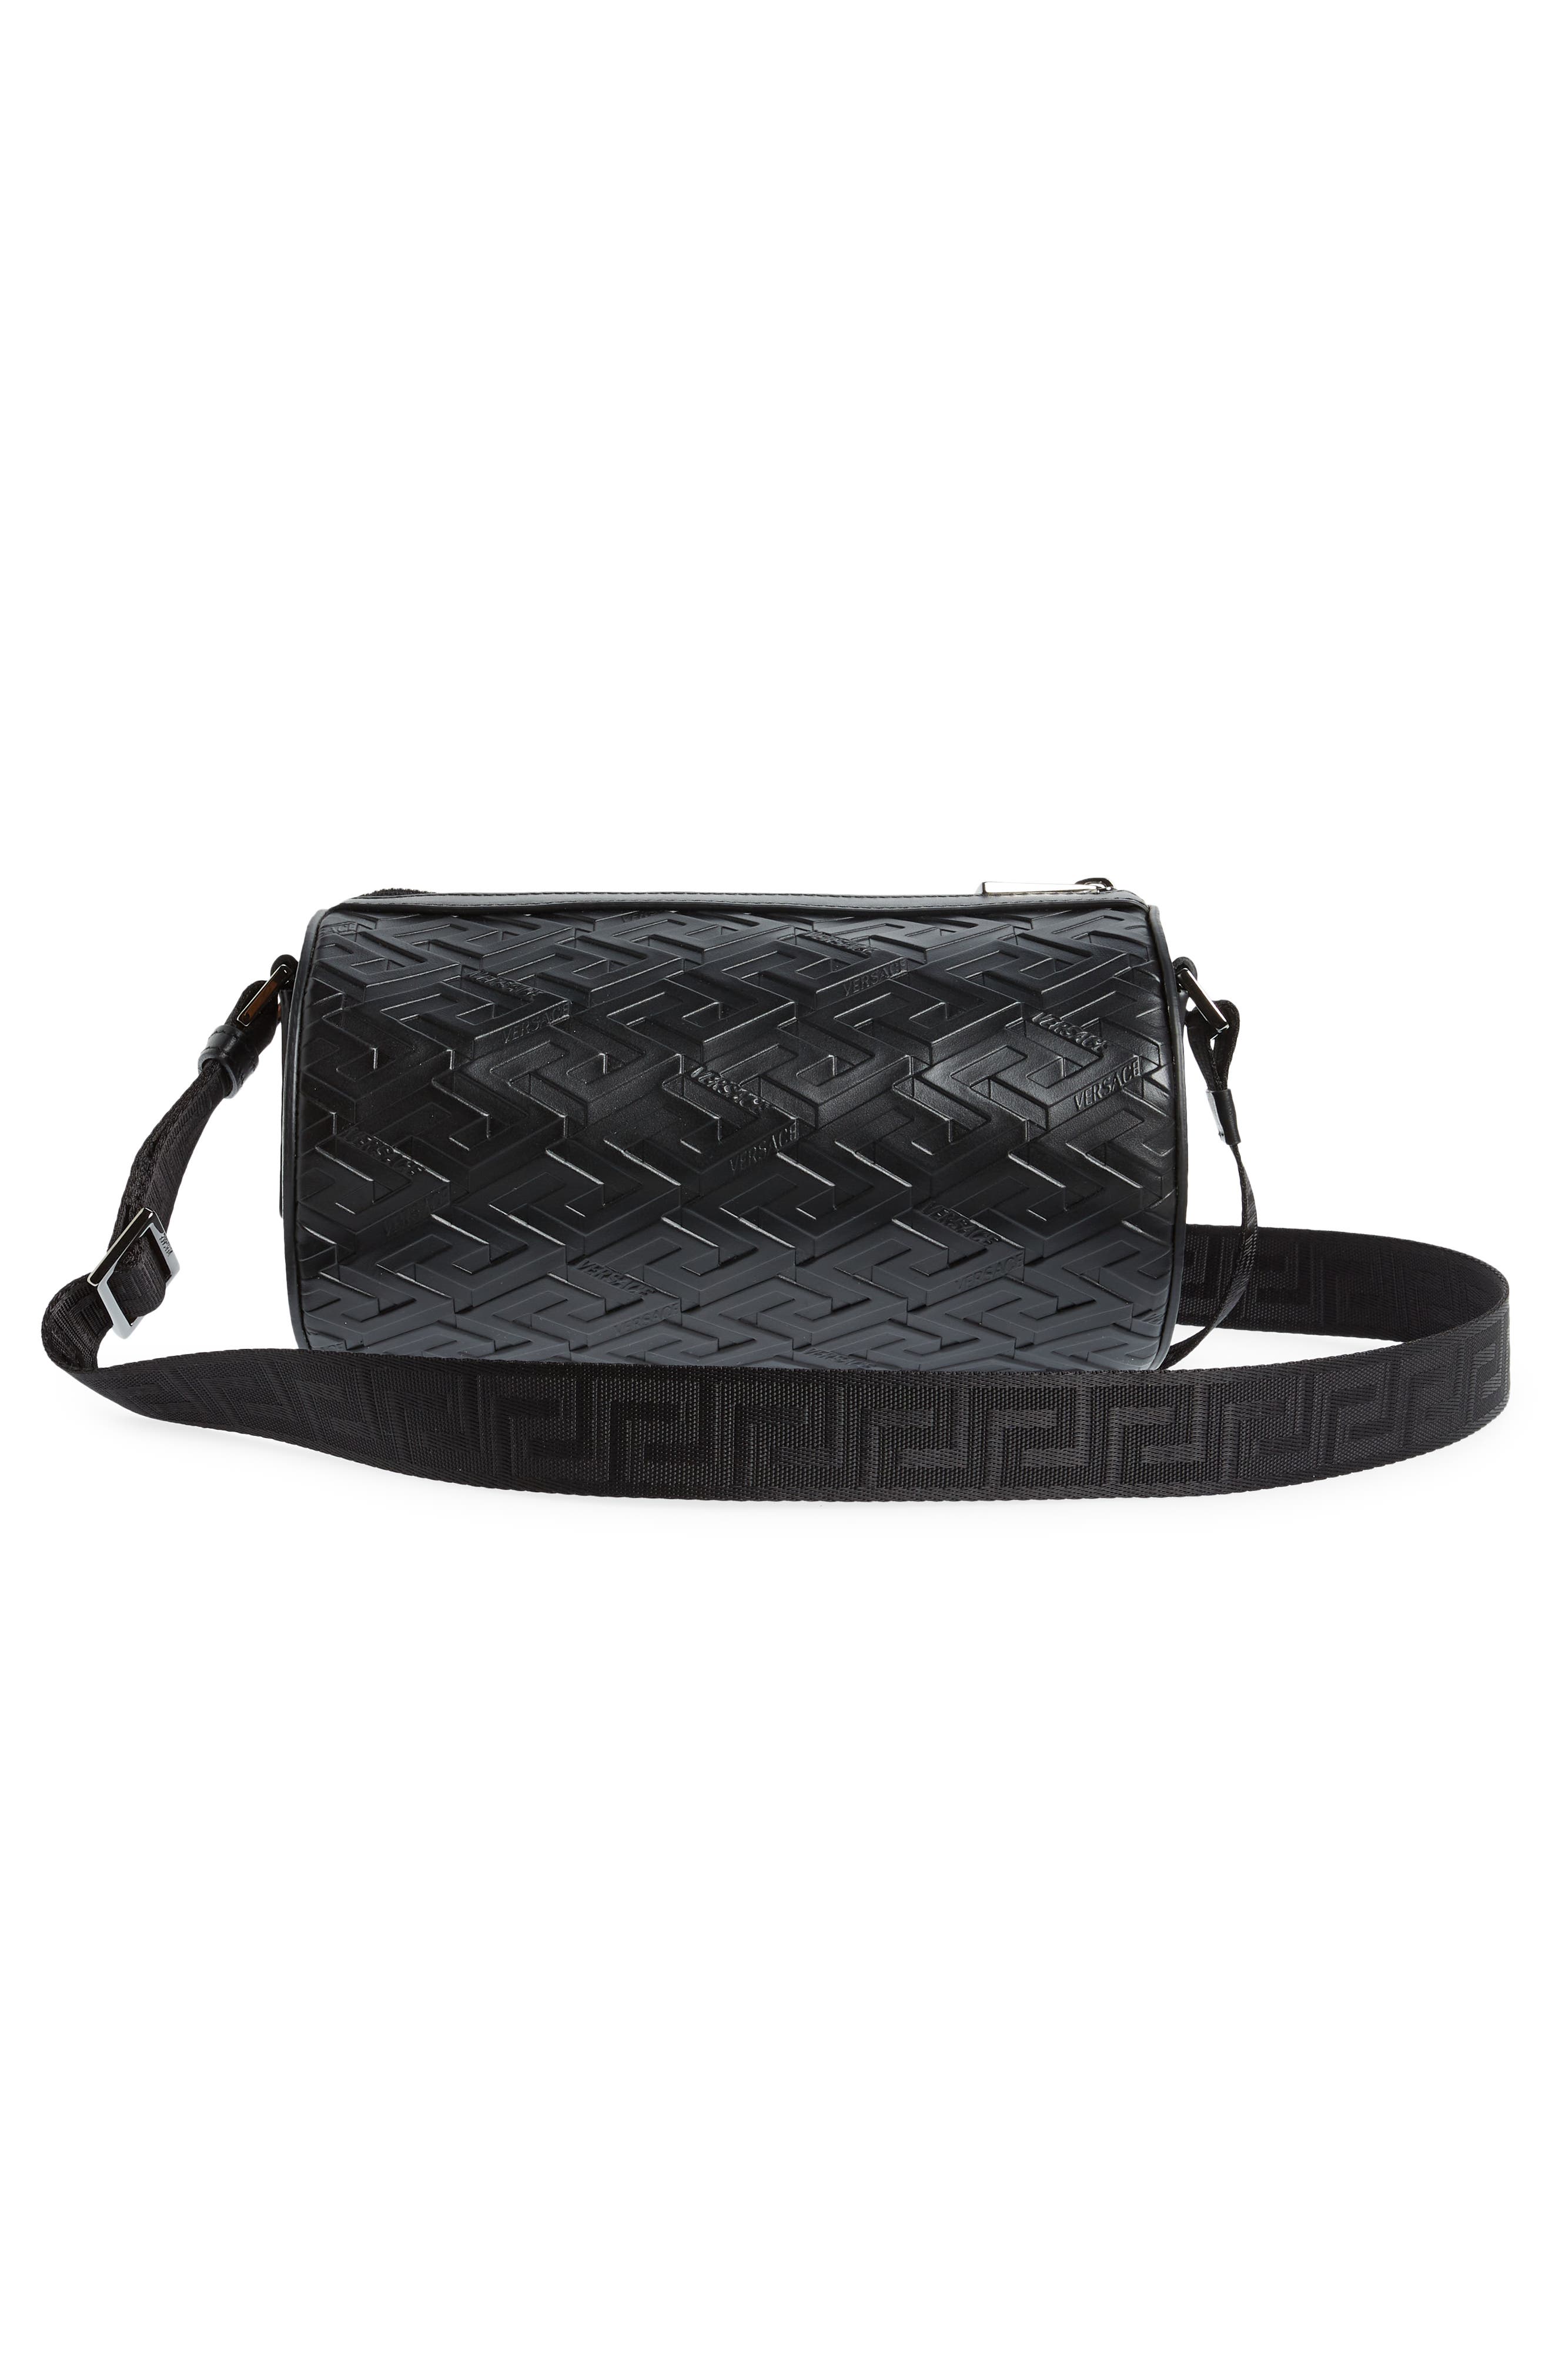 Black Versace La Greca Crossbody Bag